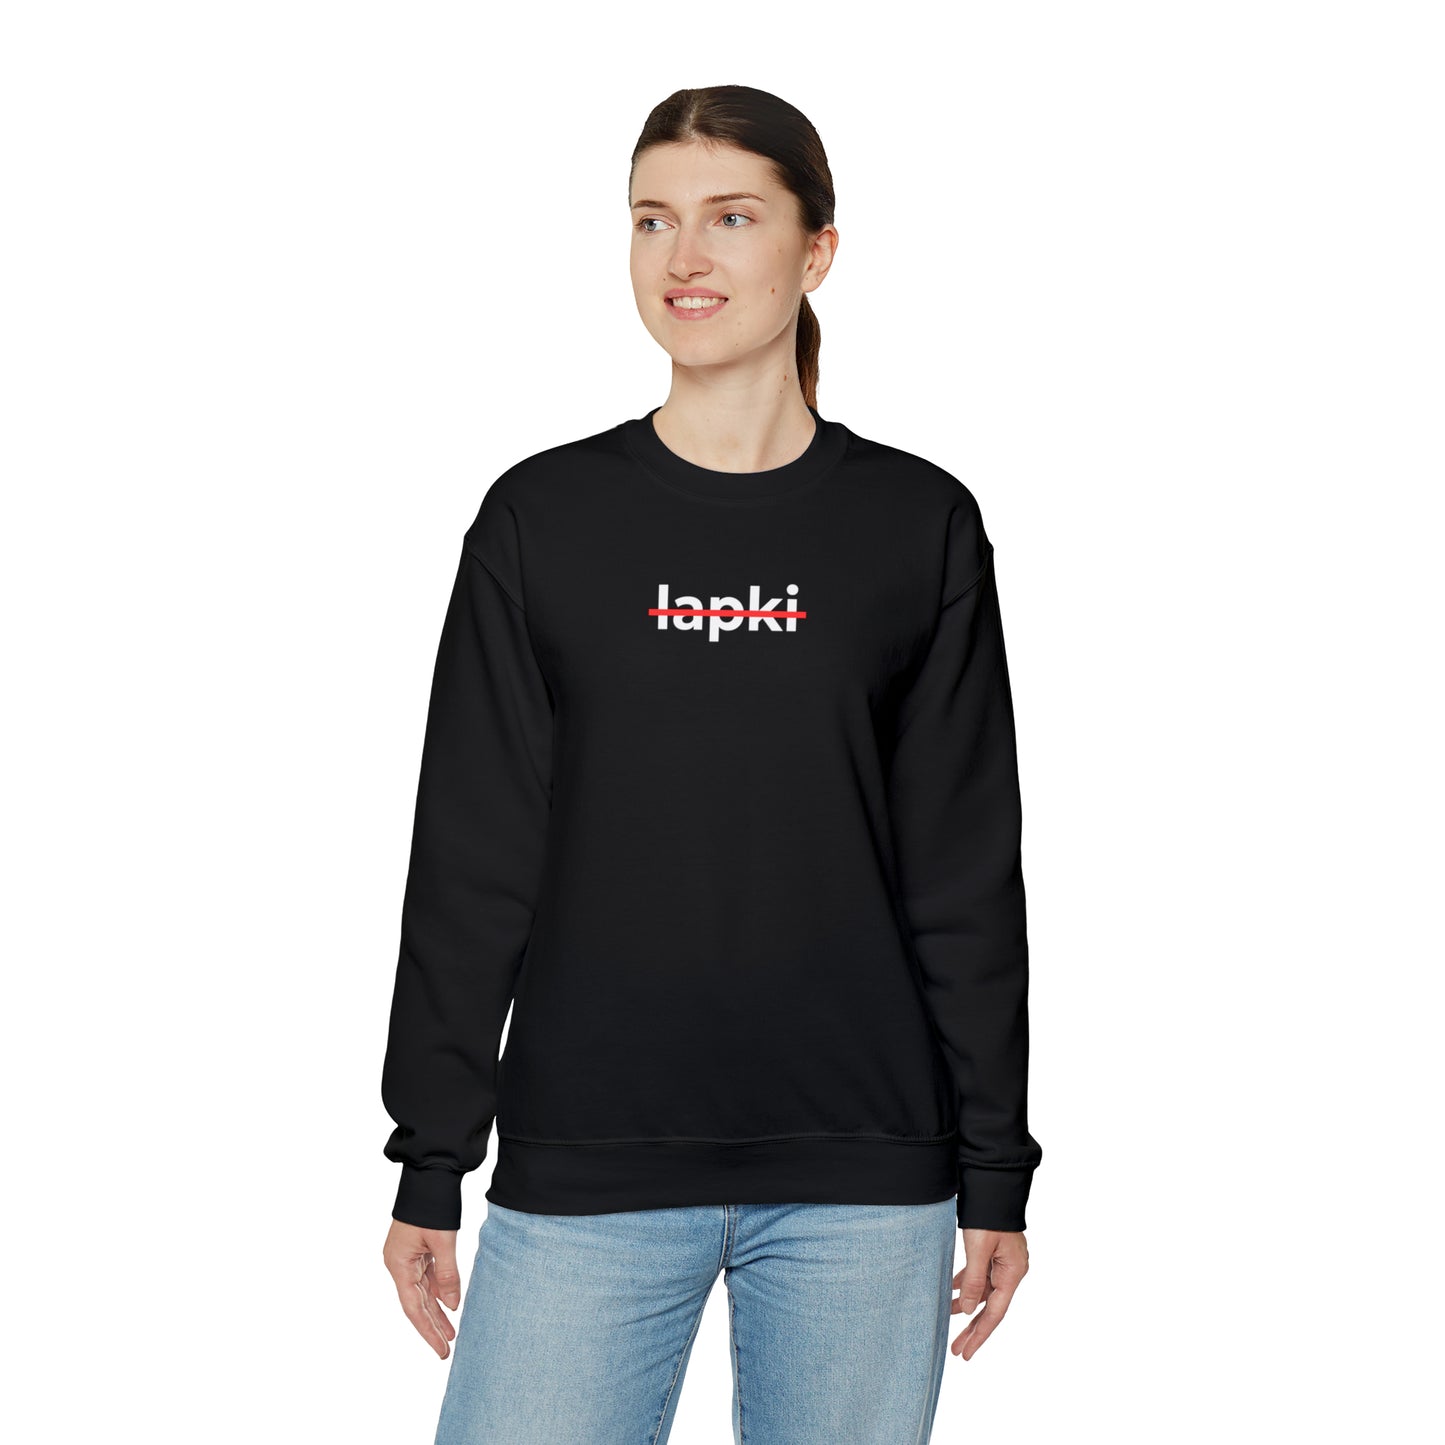 Loose-Fit Unisex Sweatshirt "Lapki"